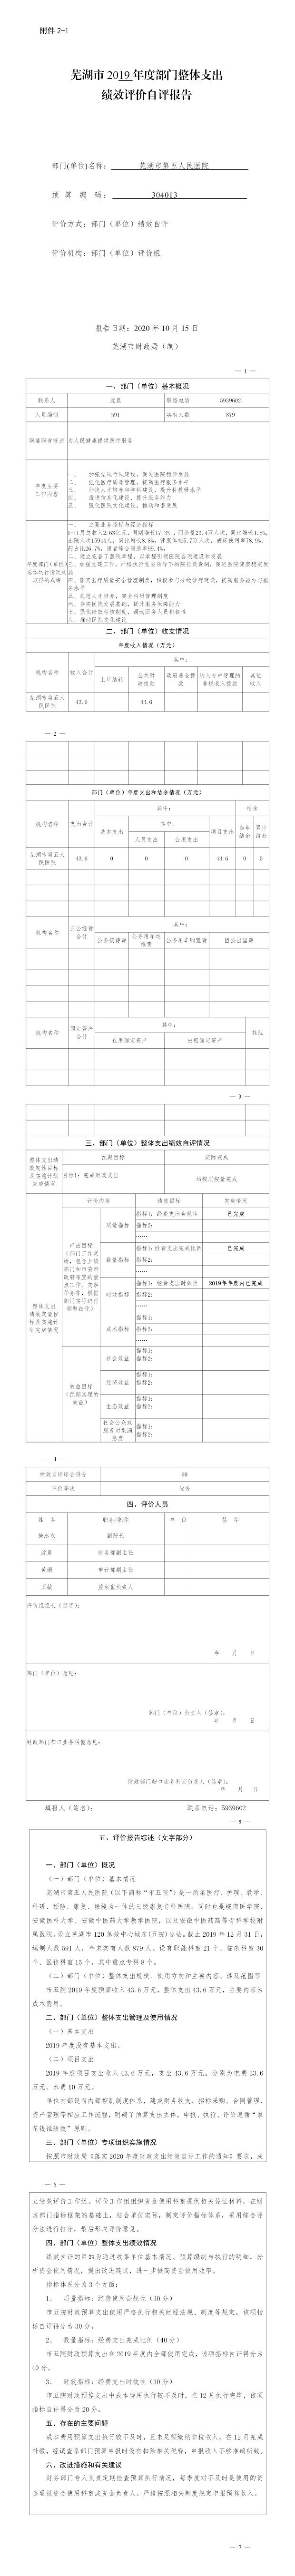 芜湖市2019年度部门整体支出绩效评价自评报告.jpg